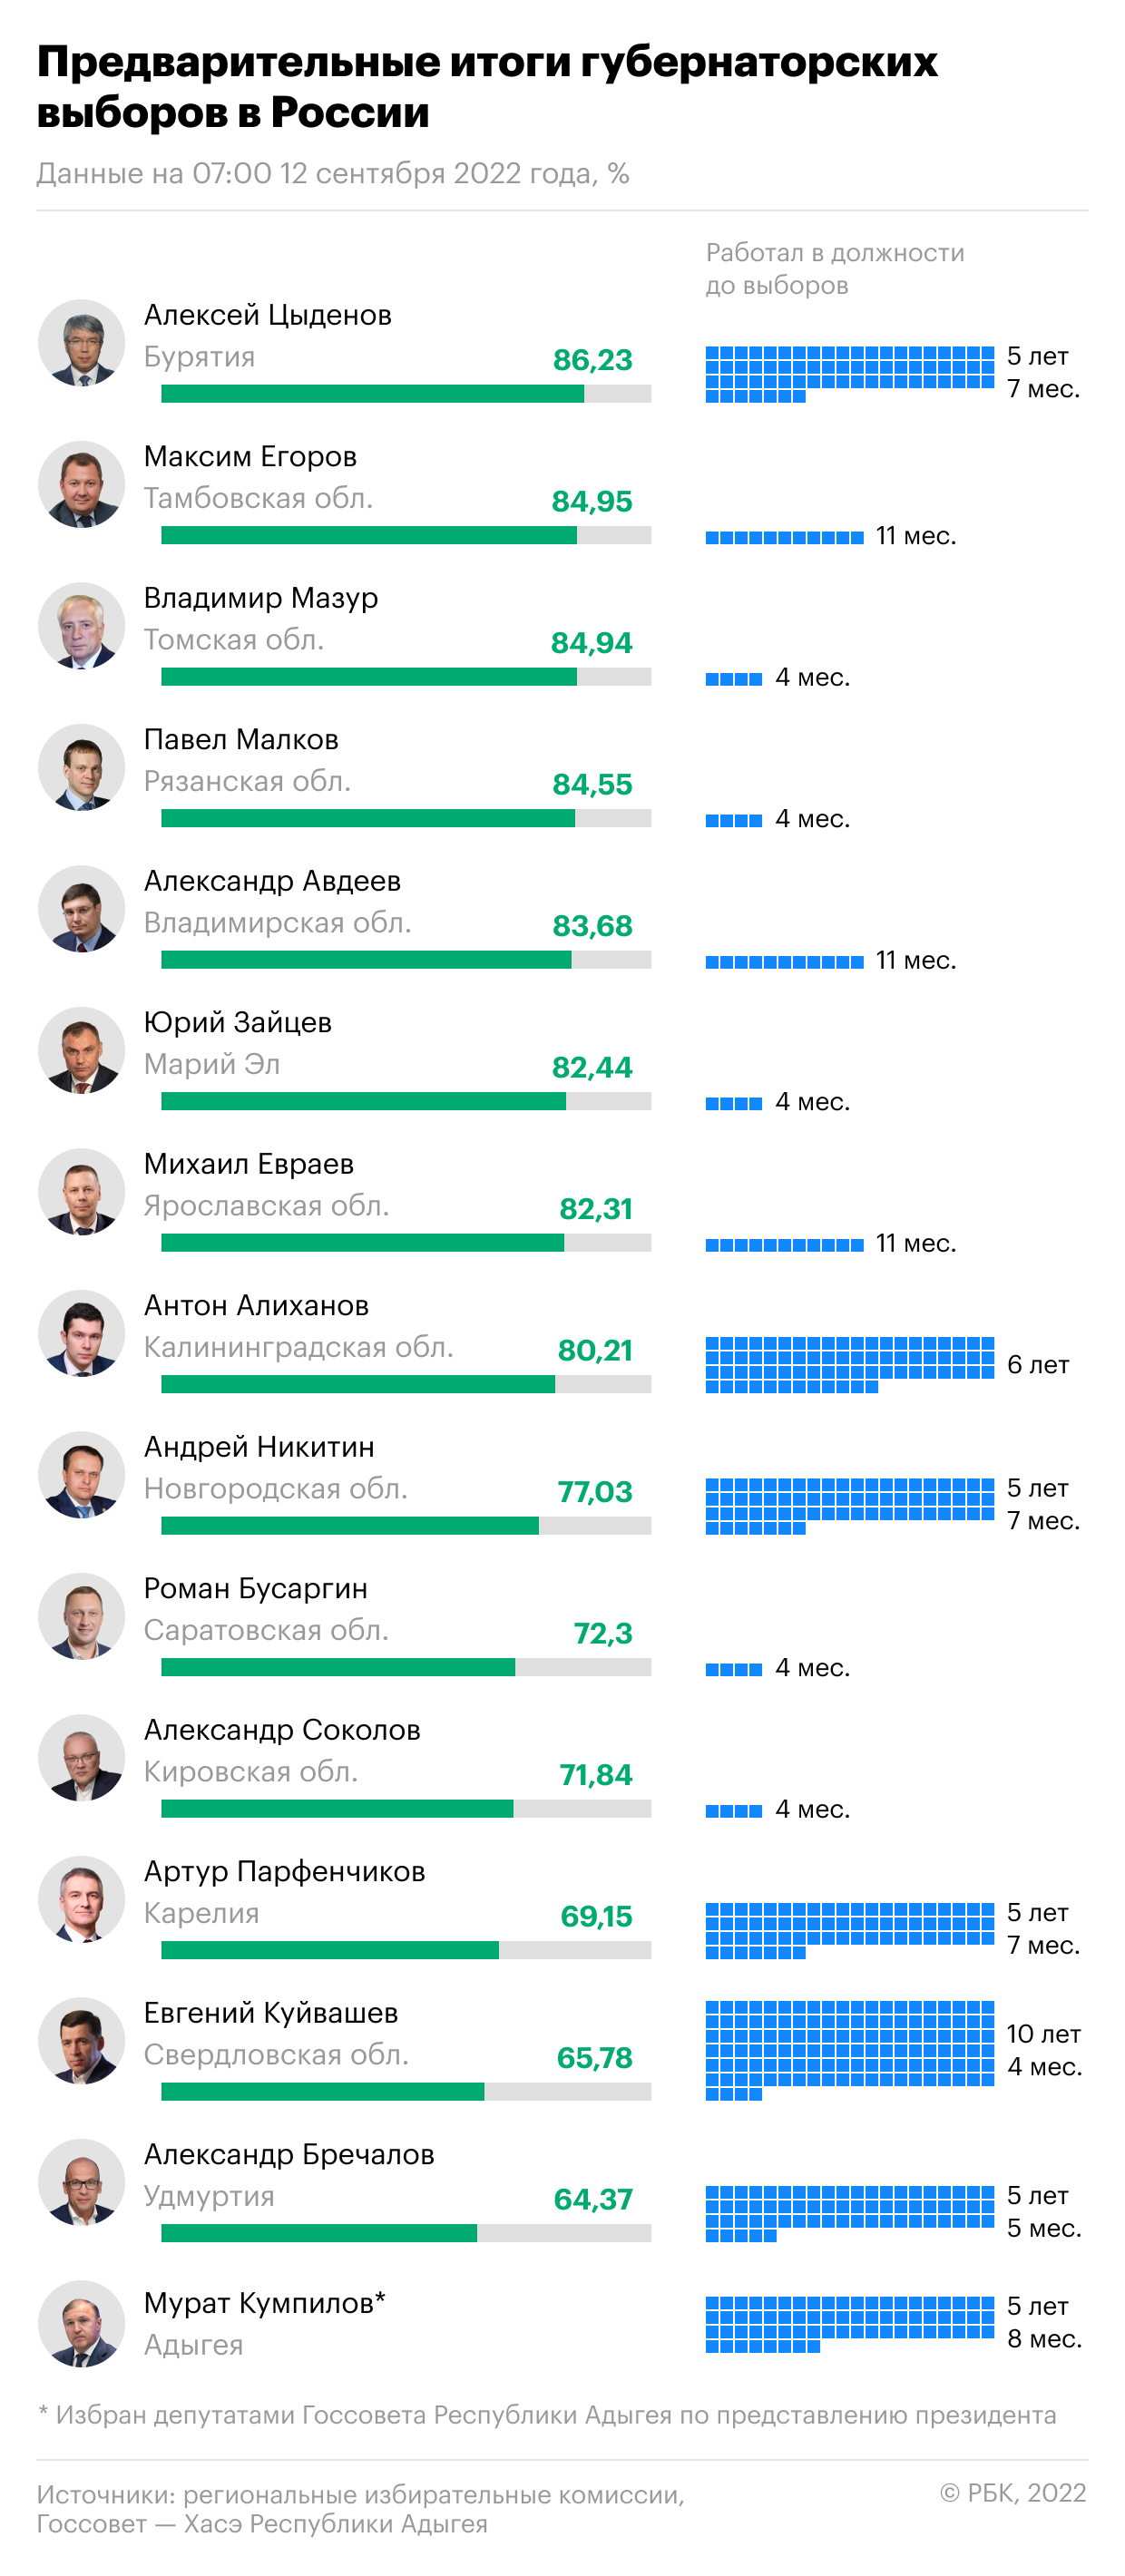 Как закончились губернаторские выборы в России. Инфографика"/>













